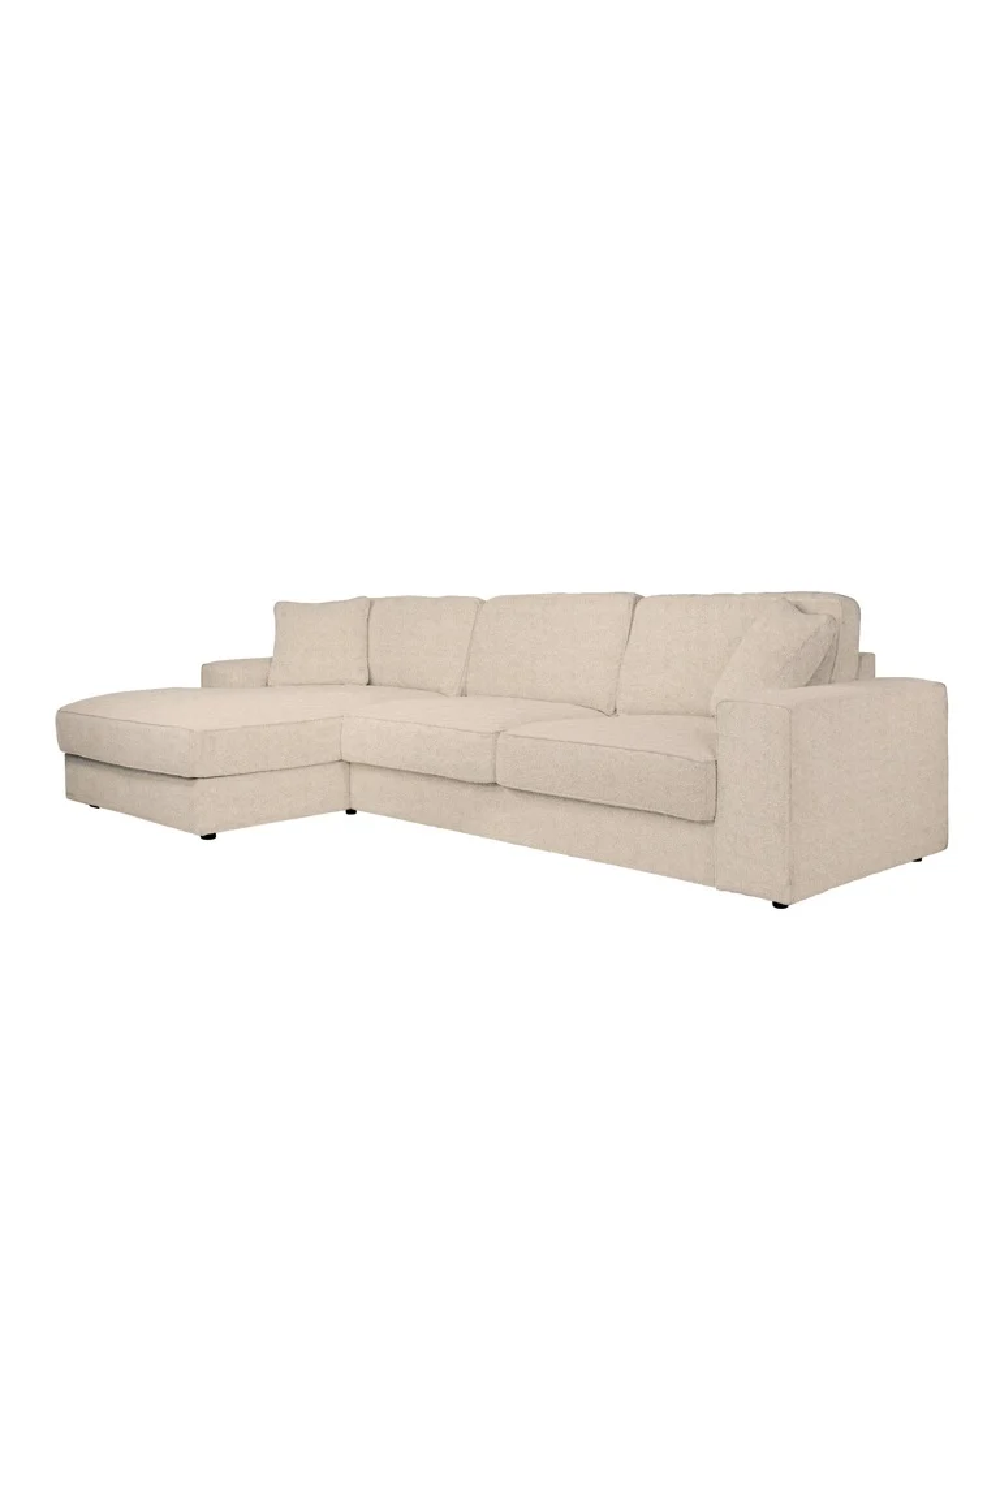 Image of Beige Minimalist Sofa Set | OROA Santos